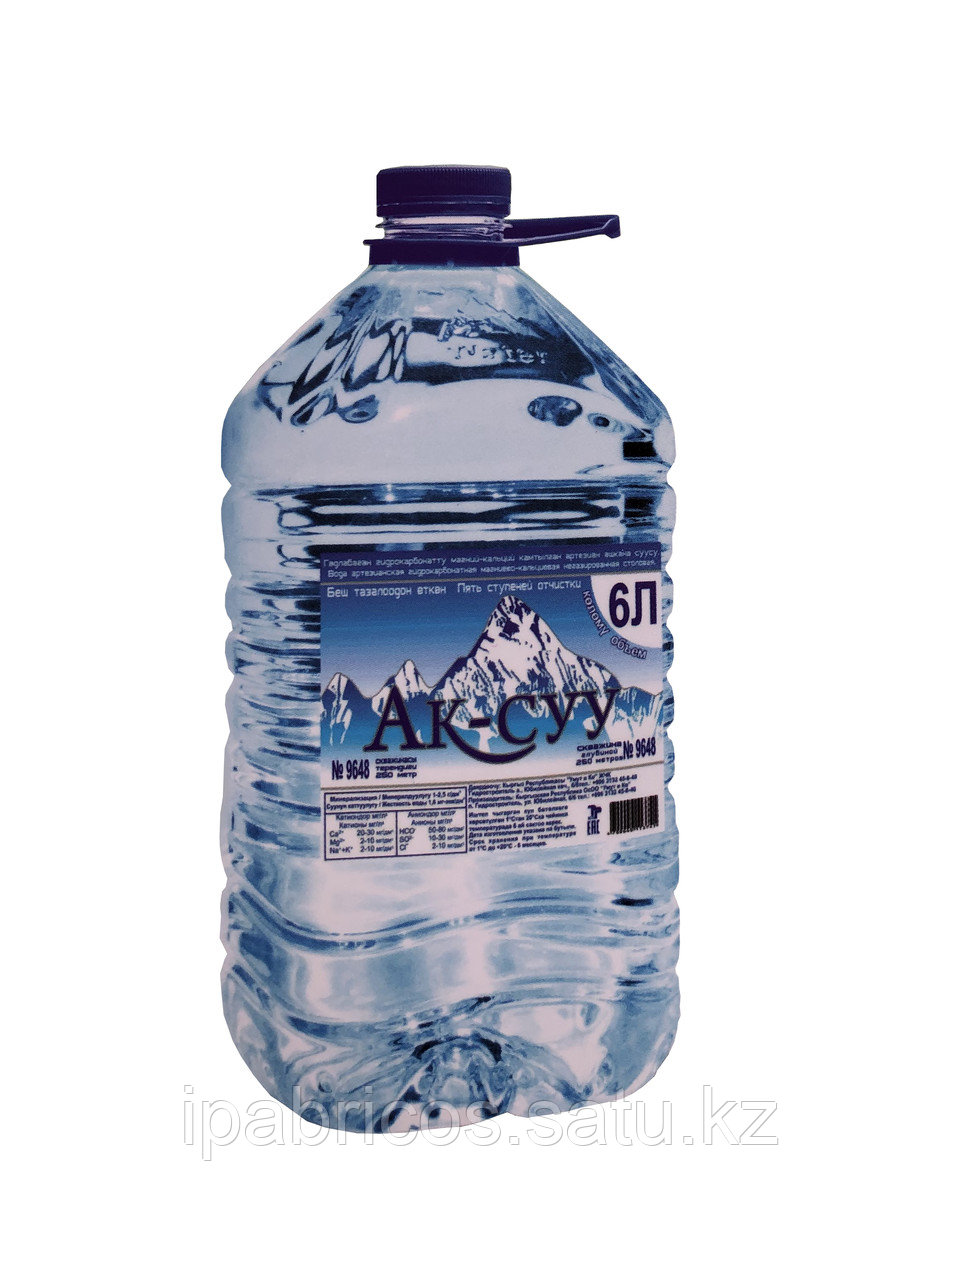 Очищенная питьевая вода "Ак-суу" негазированная столовая 6л